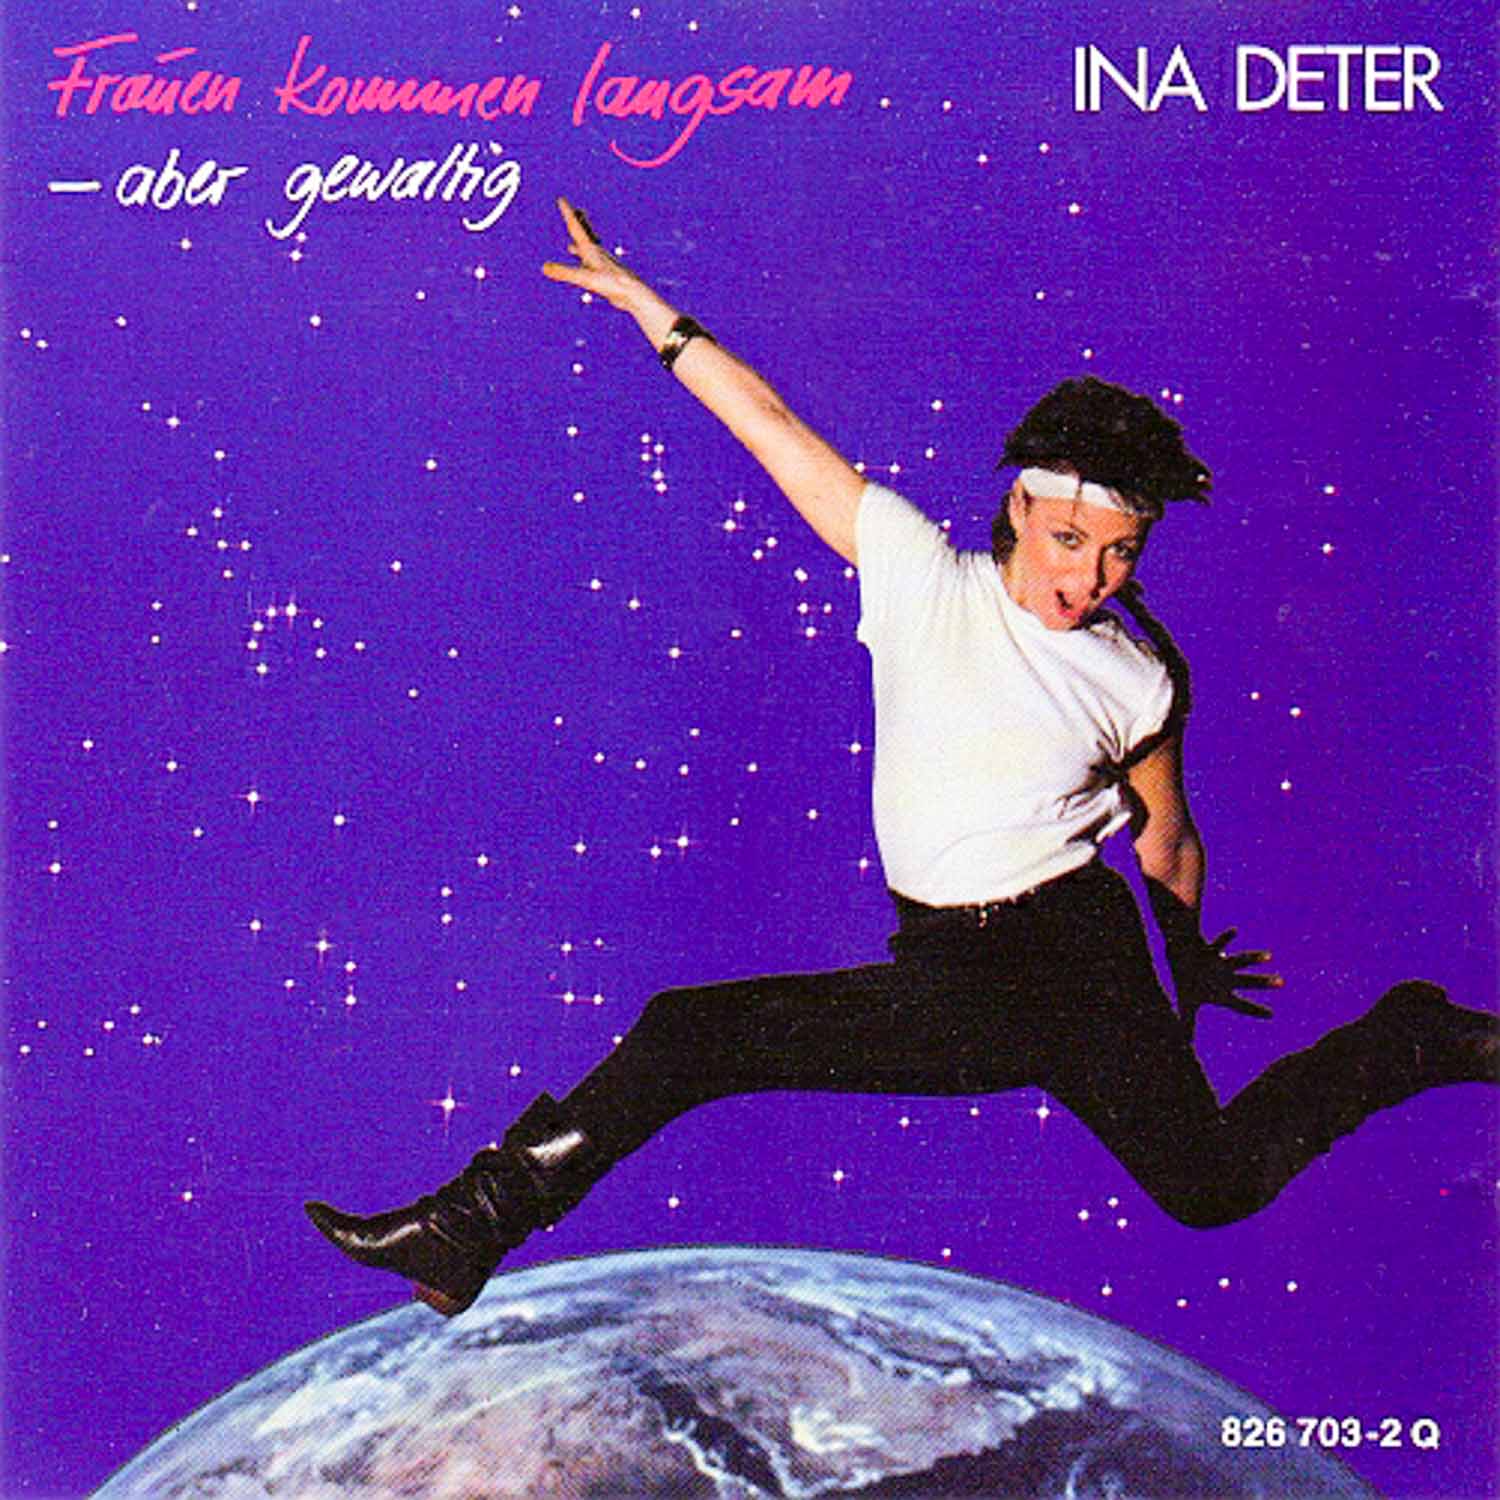 Ina Deter  Frauen kommen langsam - aber gewaltig (826 703 - 1Q)  *LP 12'' (Vinyl)*. 